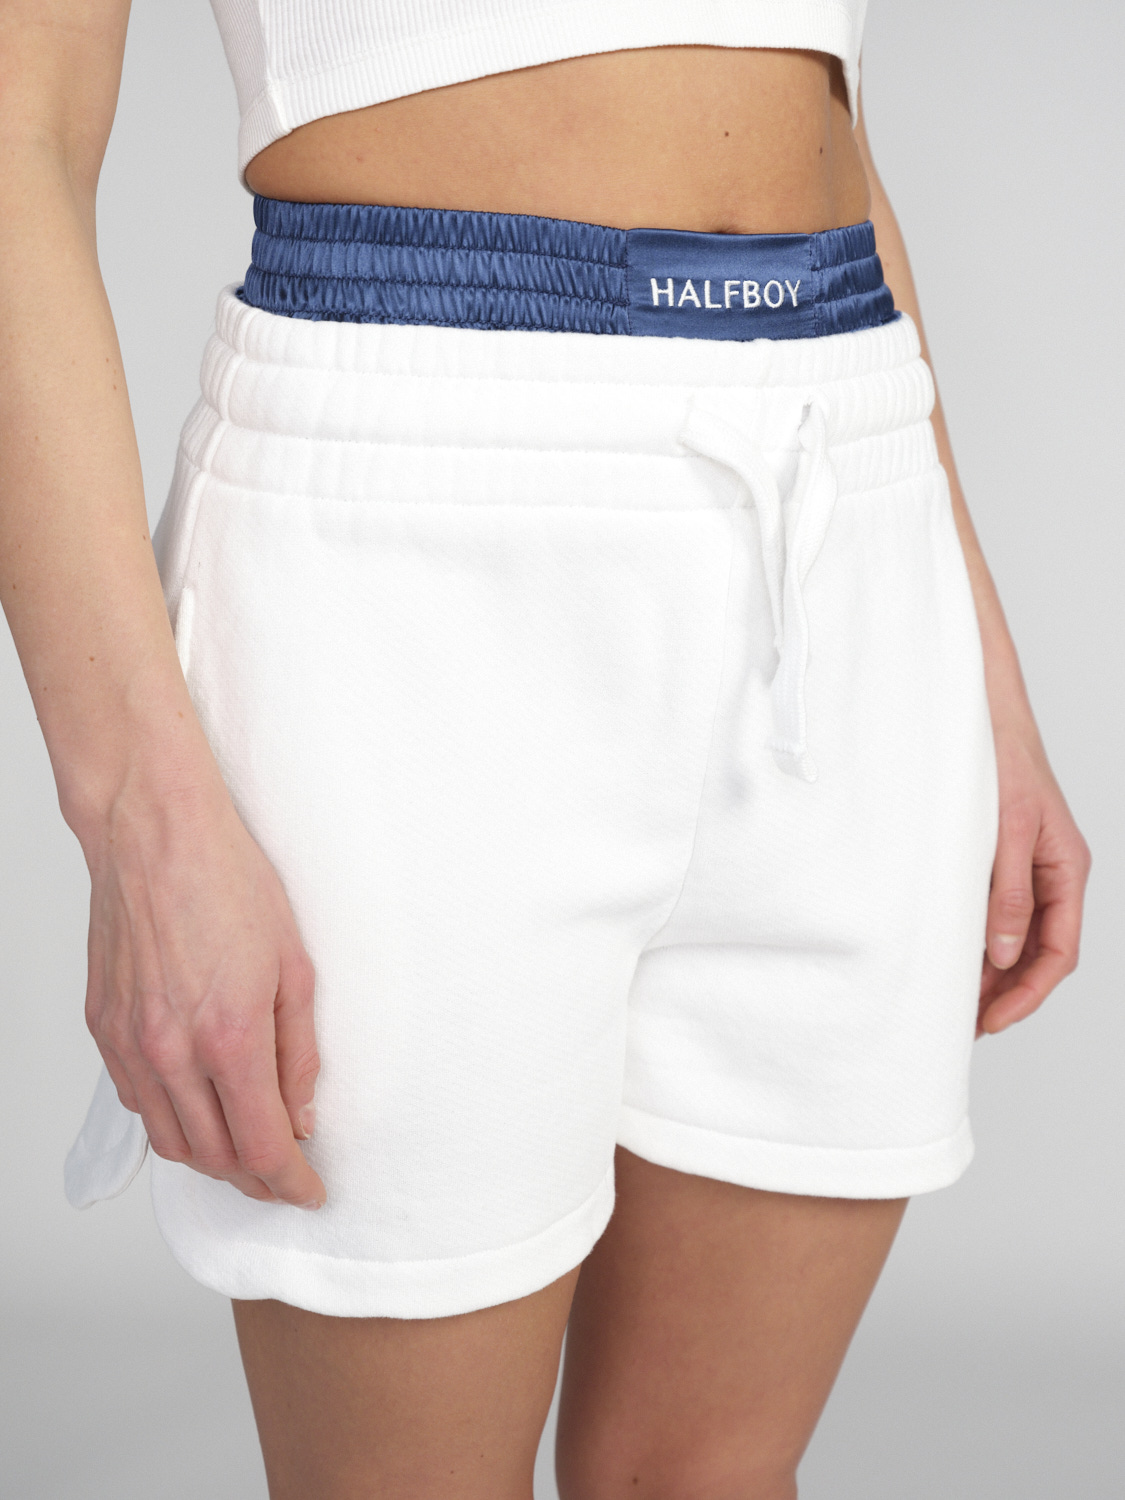 Halfboy With Boxer – Baumwoll-Shorts mit Boxer-Detail  weiß XS